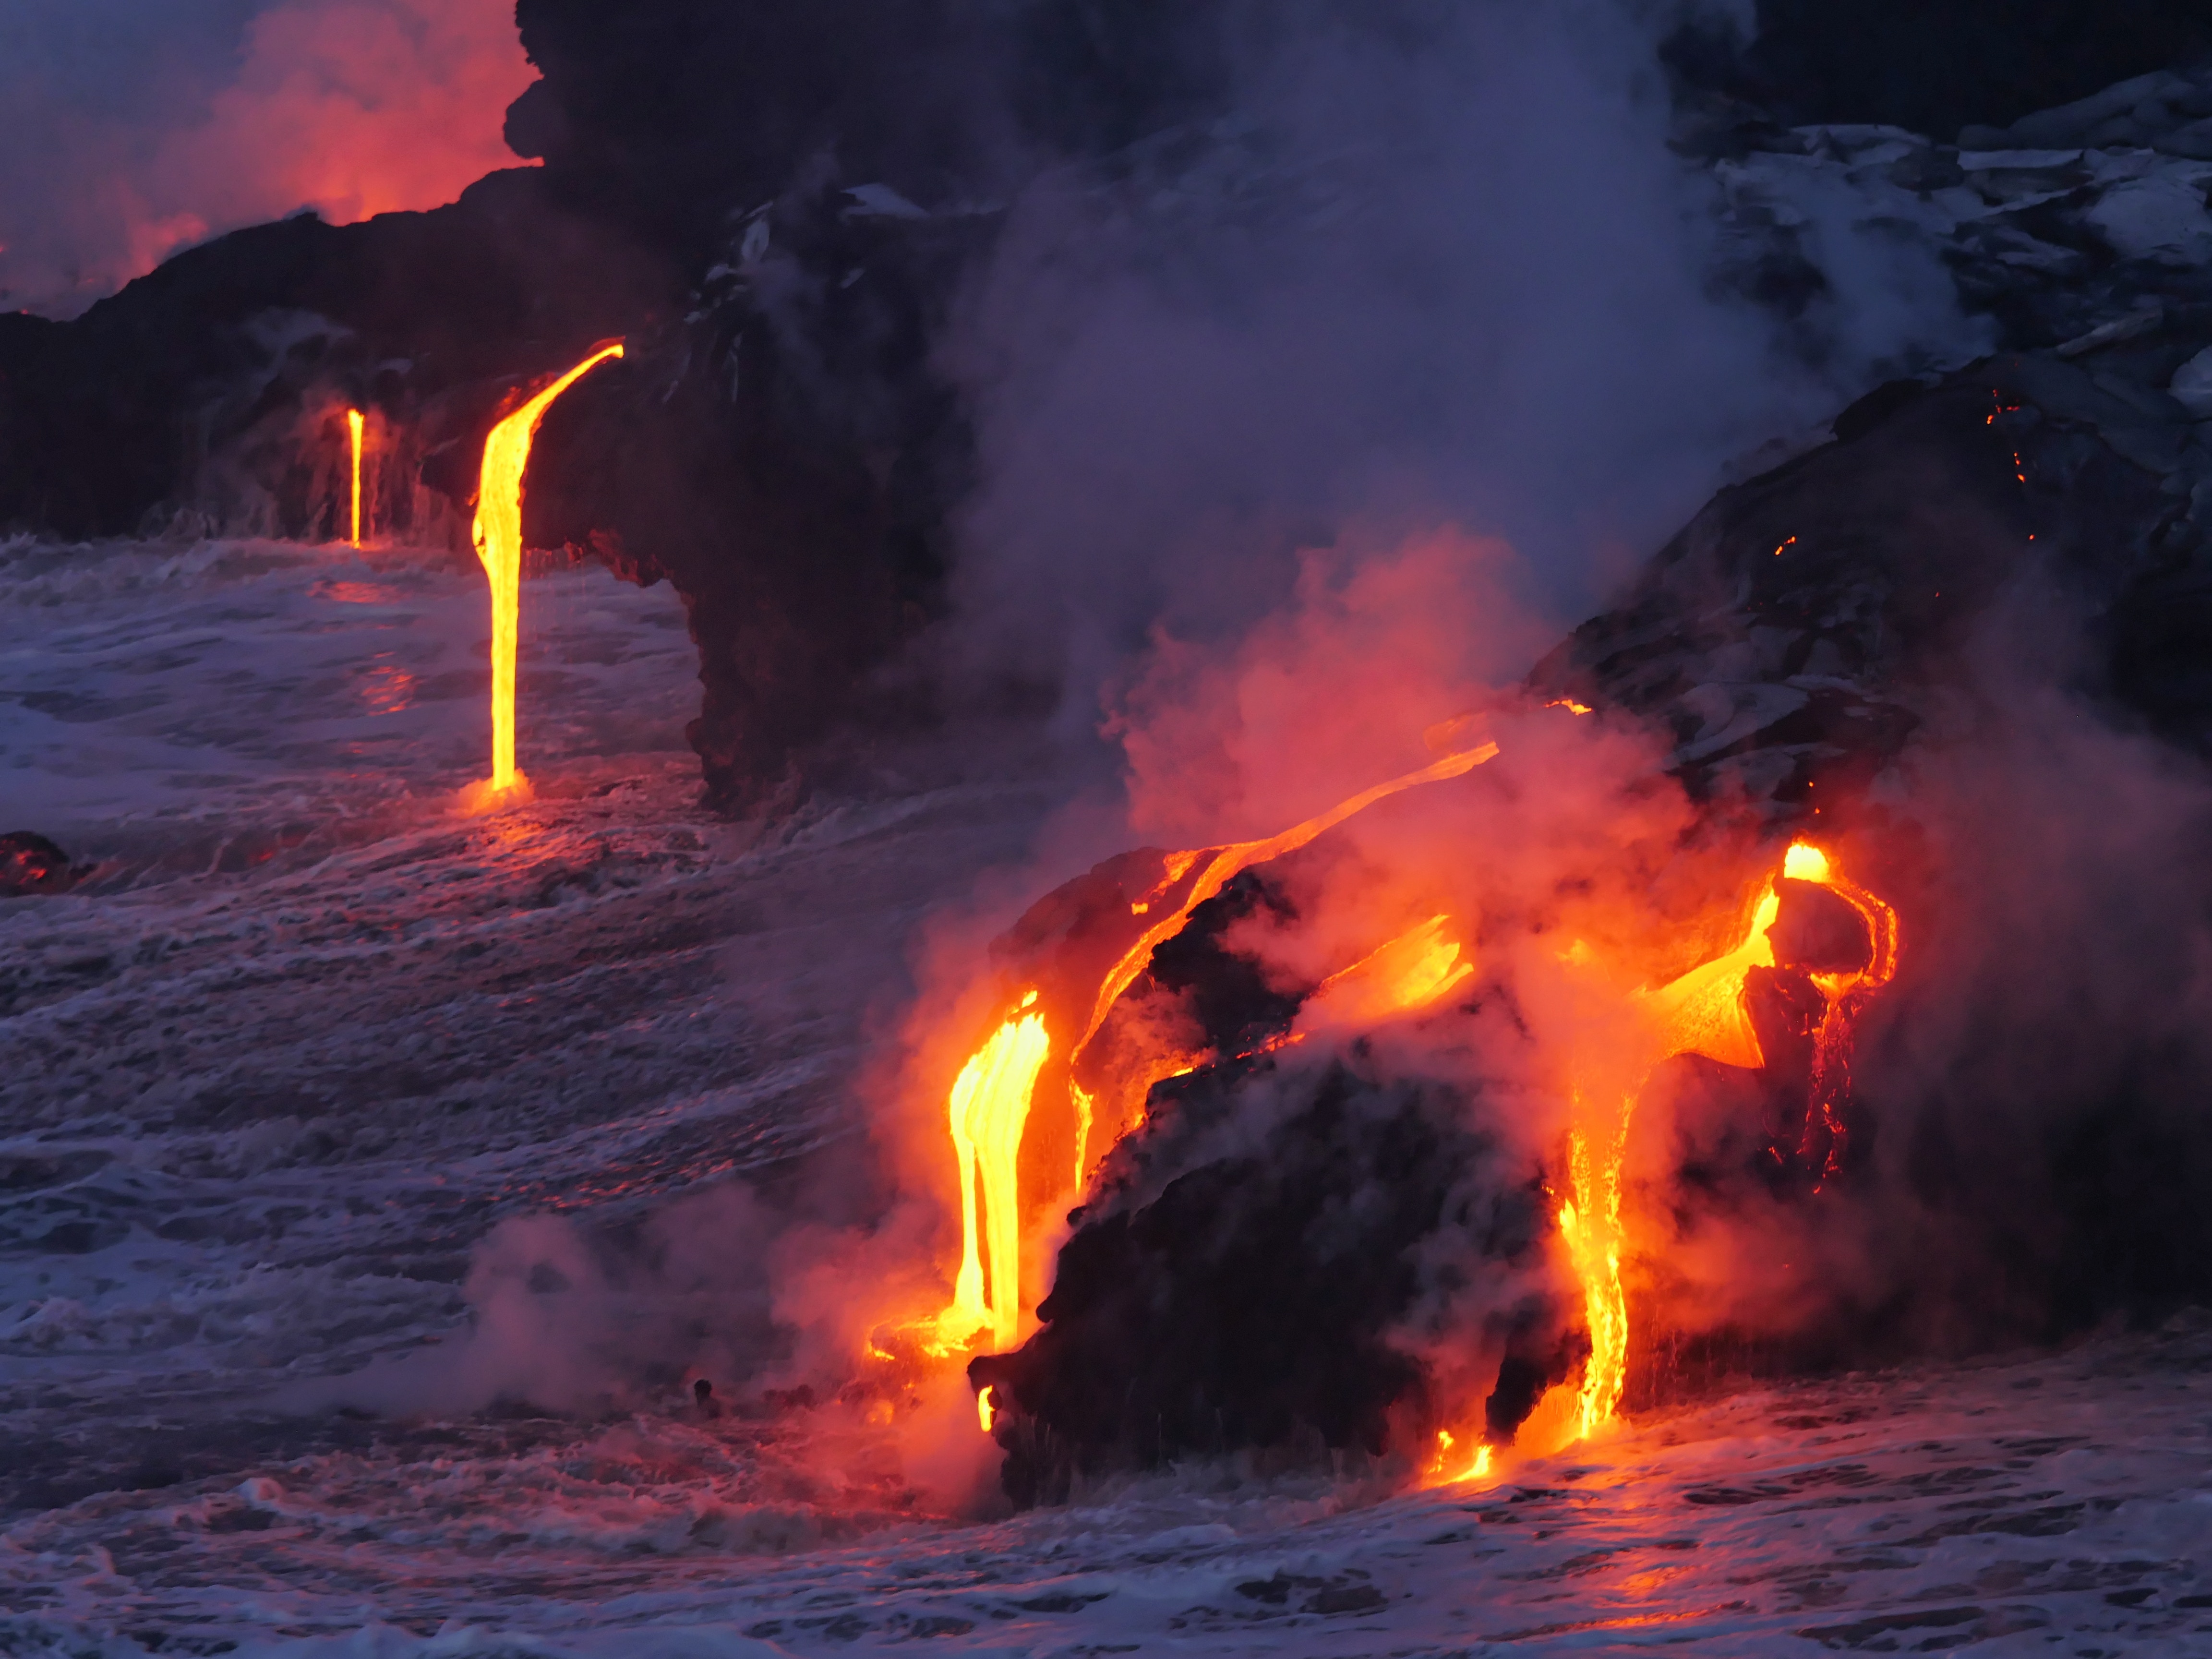 Gefährliche Touristenorte - Vulkane sind nicht nur wegen Lava gefährlich